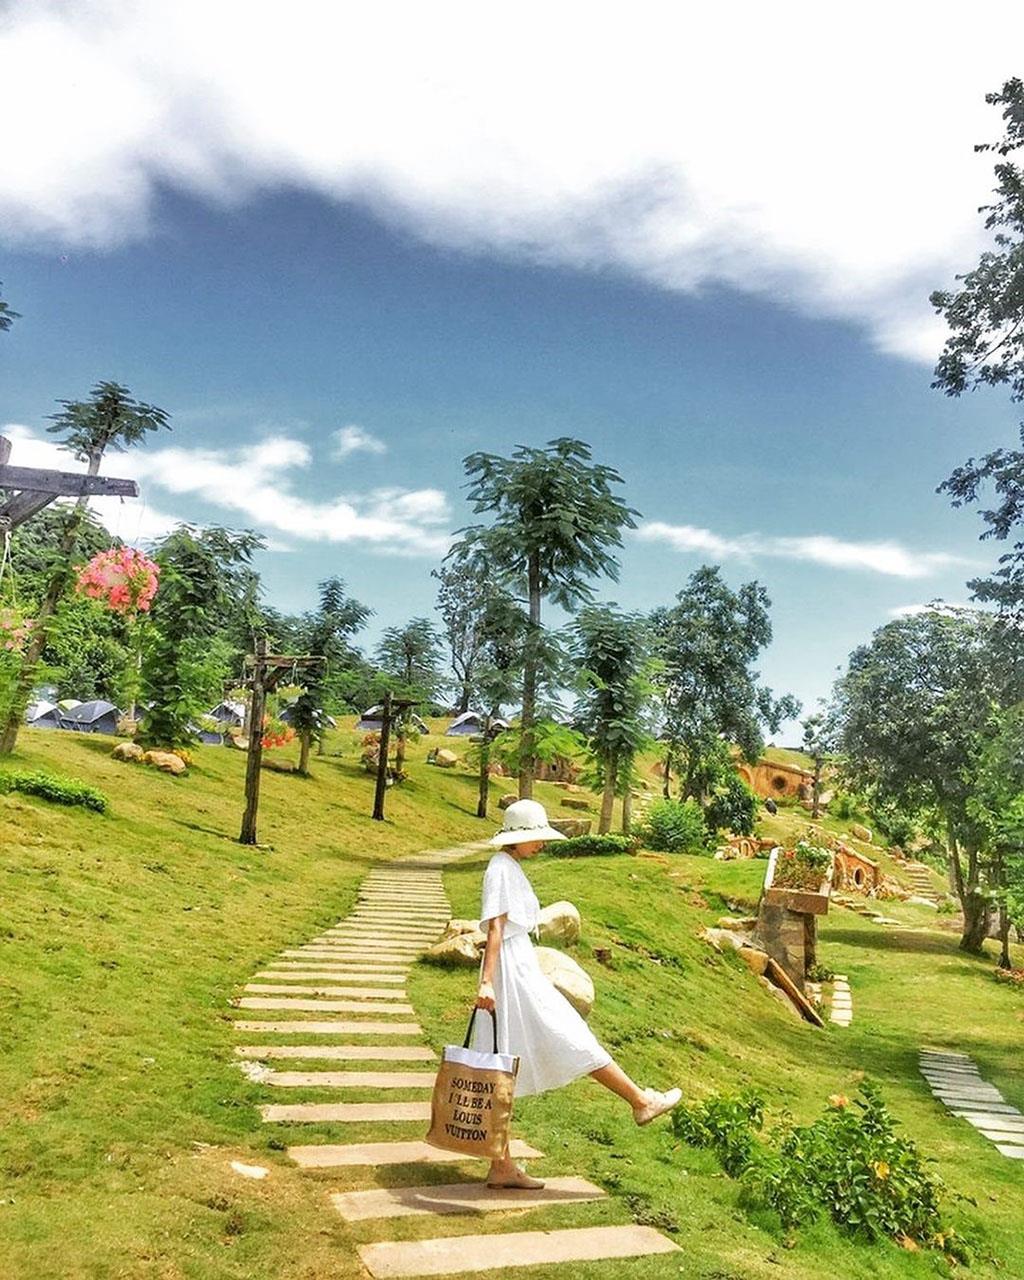 Hướng dẫn đường đi đến khu dã ngoại Bạch Mã Village Huế